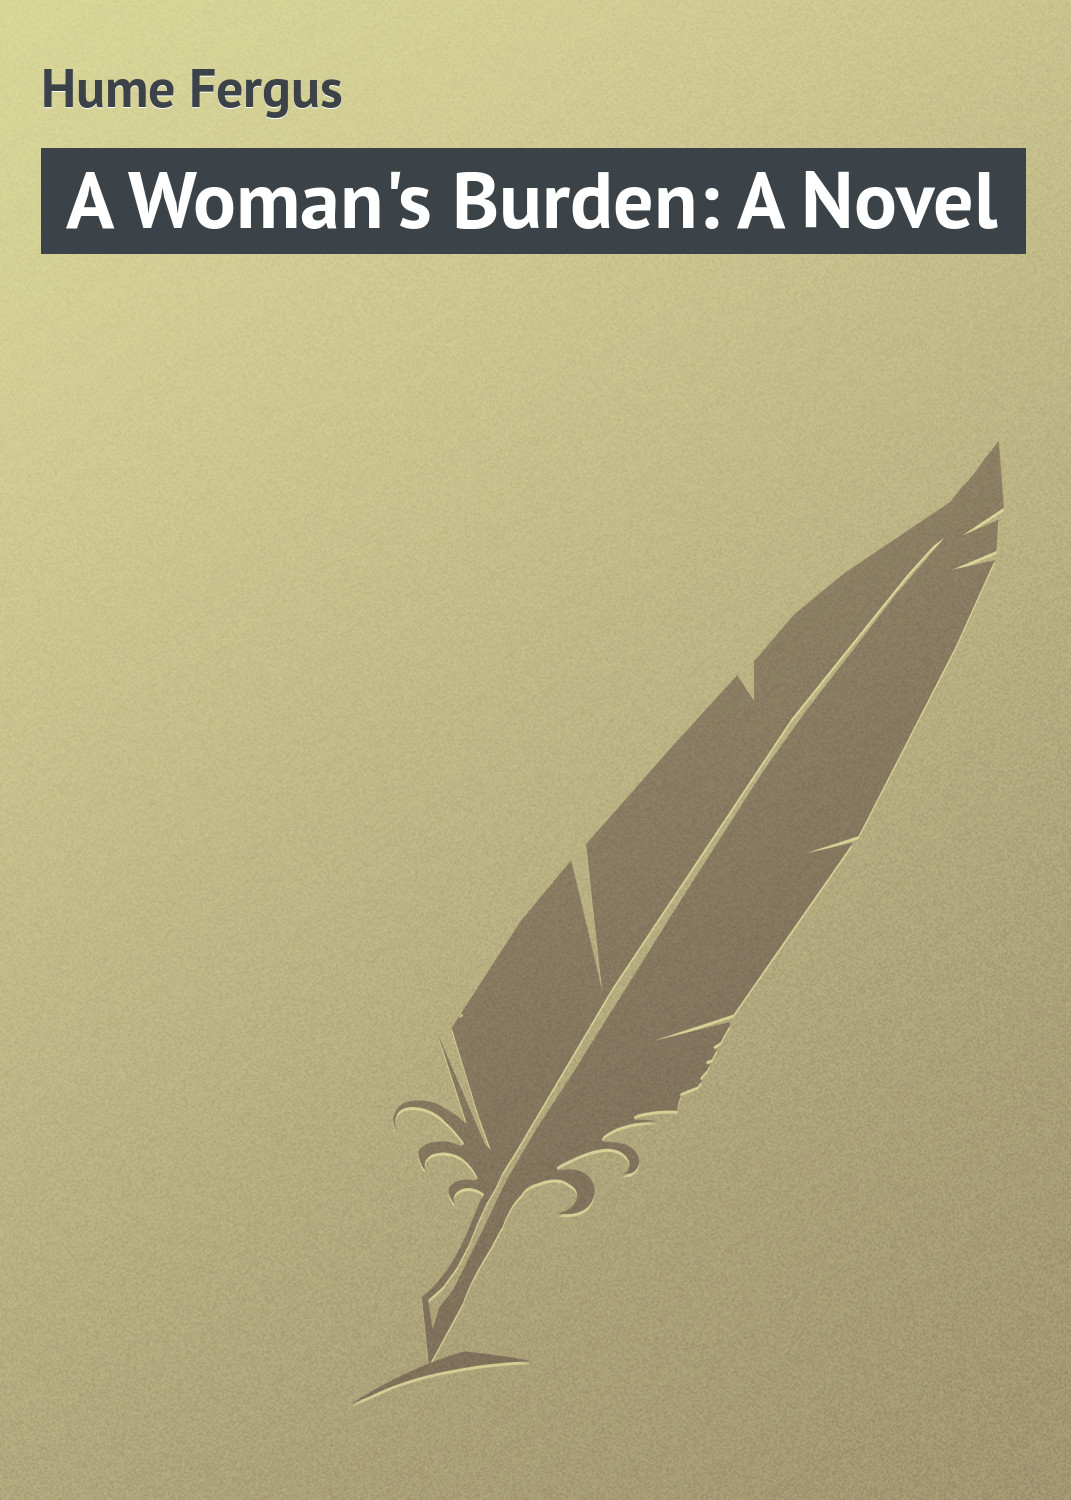 Книга A Woman's Burden: A Novel из серии , созданная Fergus Hume, может относится к жанру Зарубежная классика. Стоимость электронной книги A Woman's Burden: A Novel с идентификатором 23164515 составляет 5.99 руб.